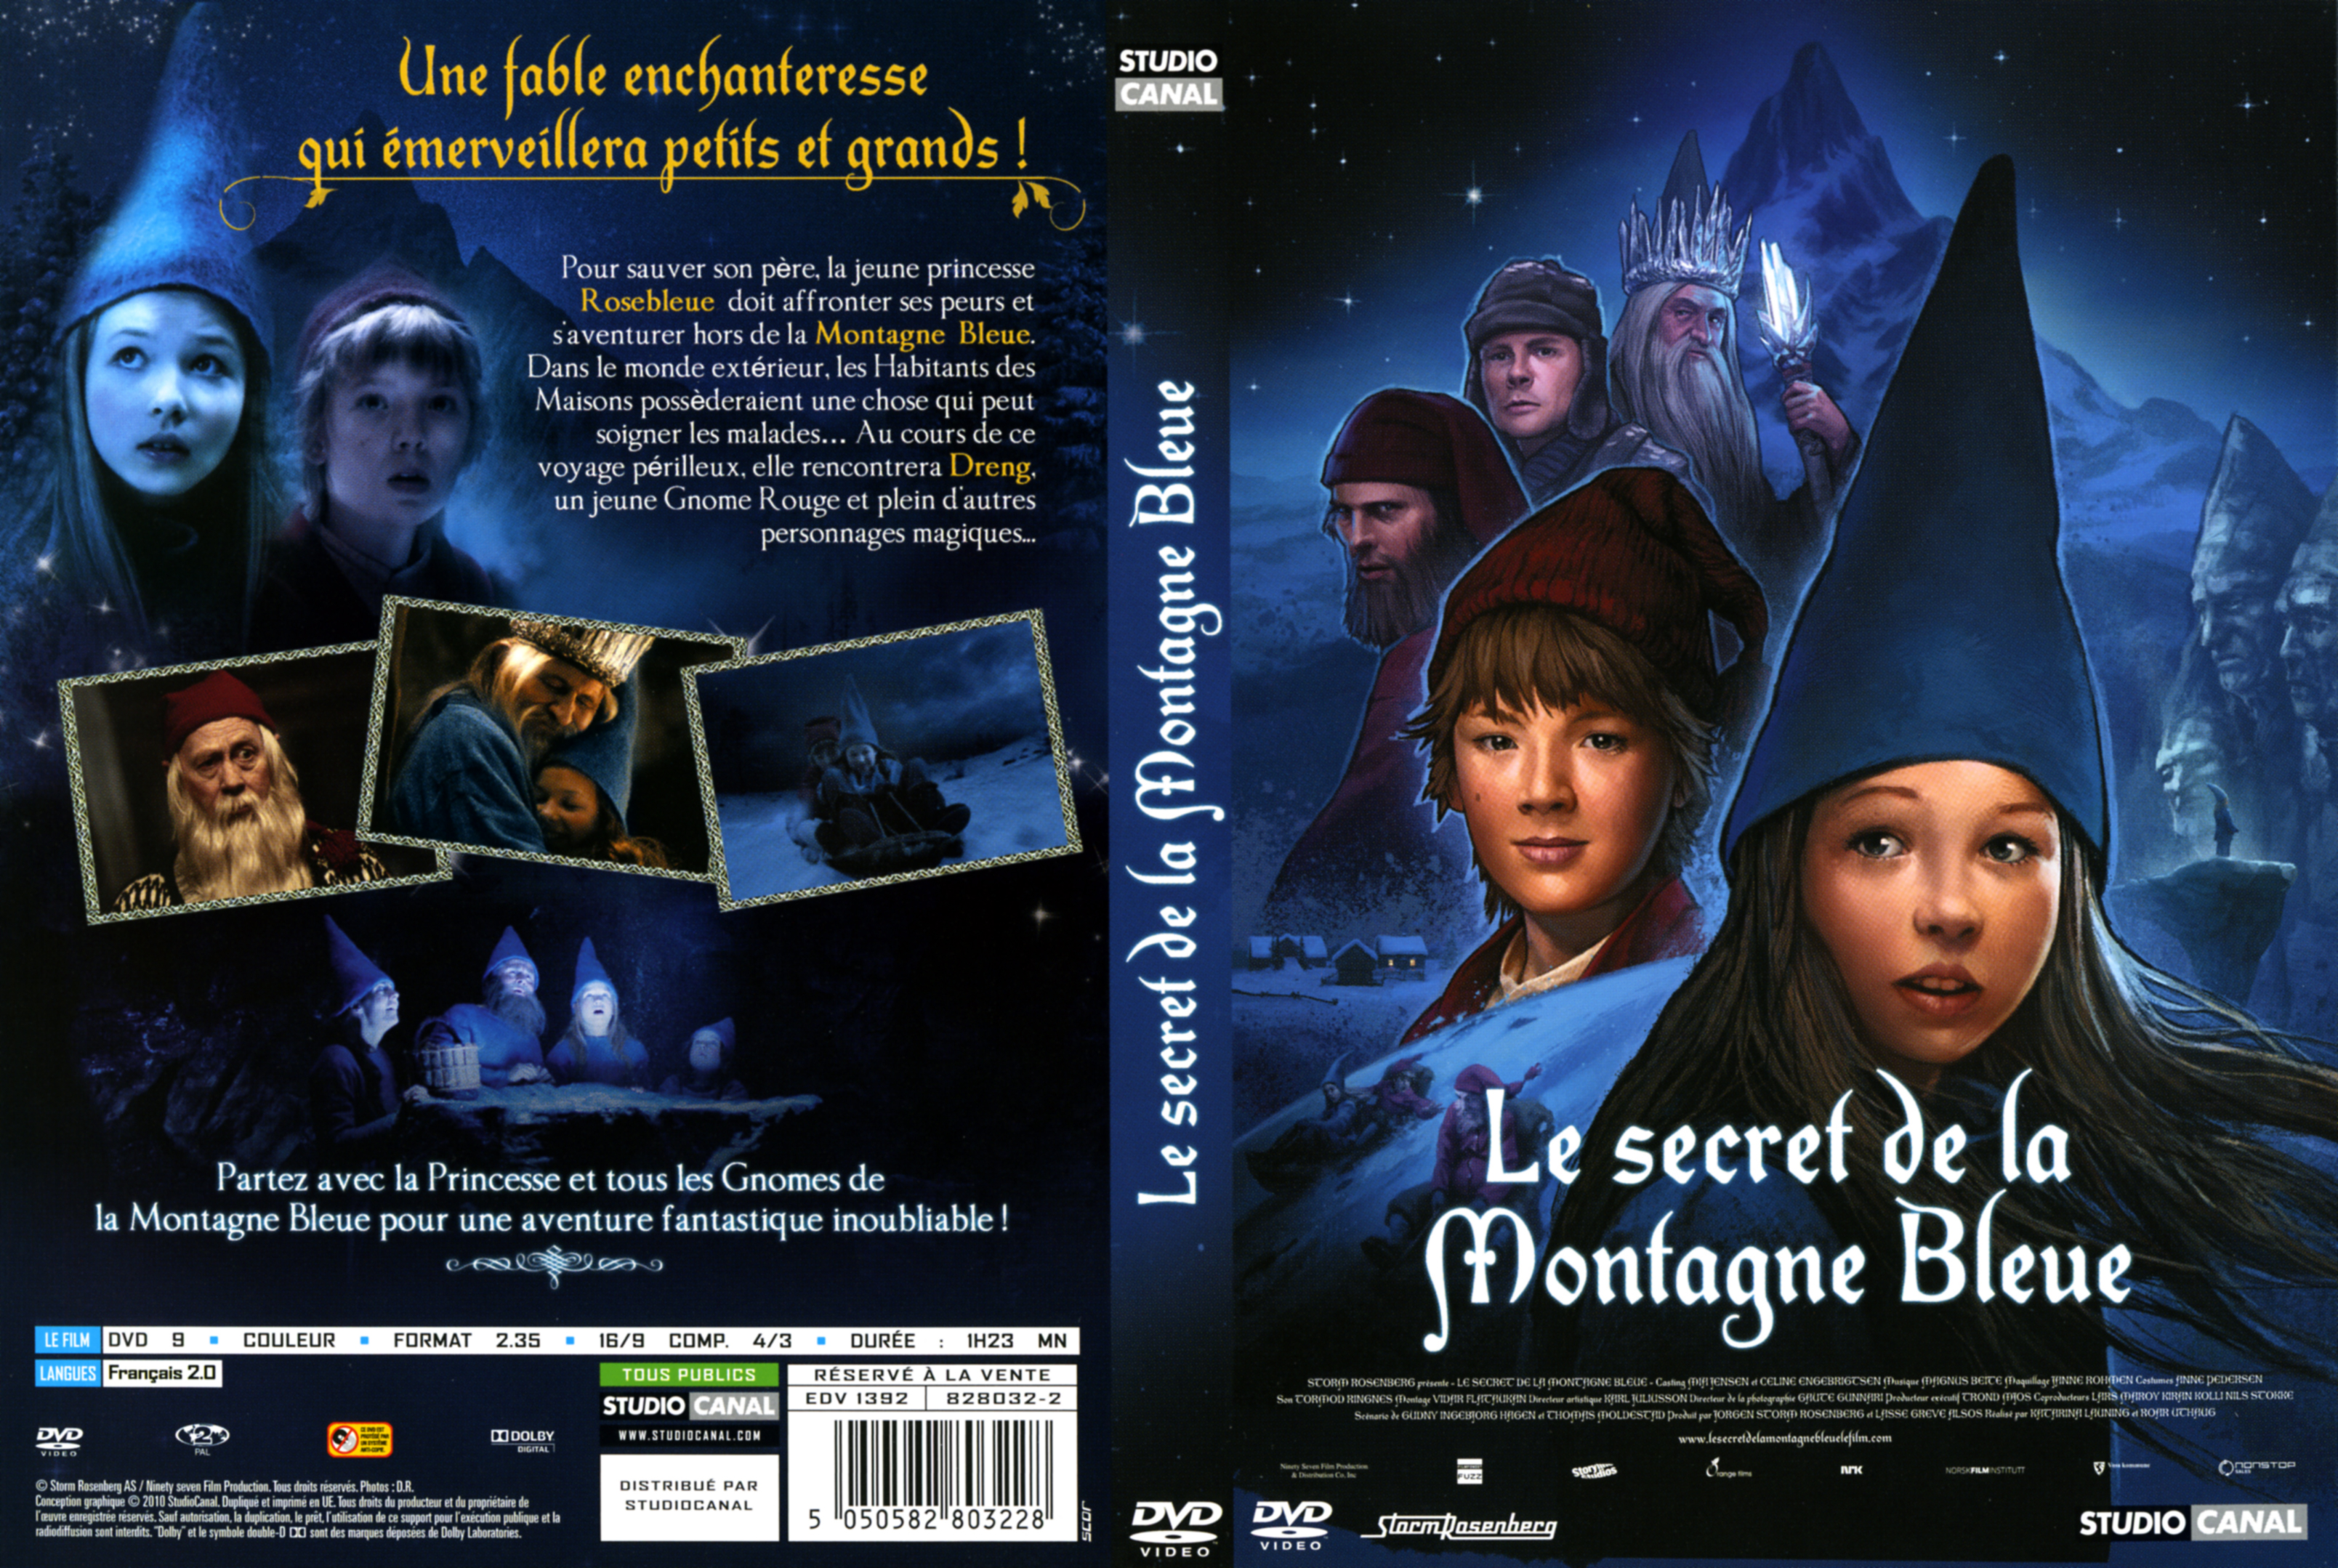 Jaquette DVD Le secret de la montagne bleue